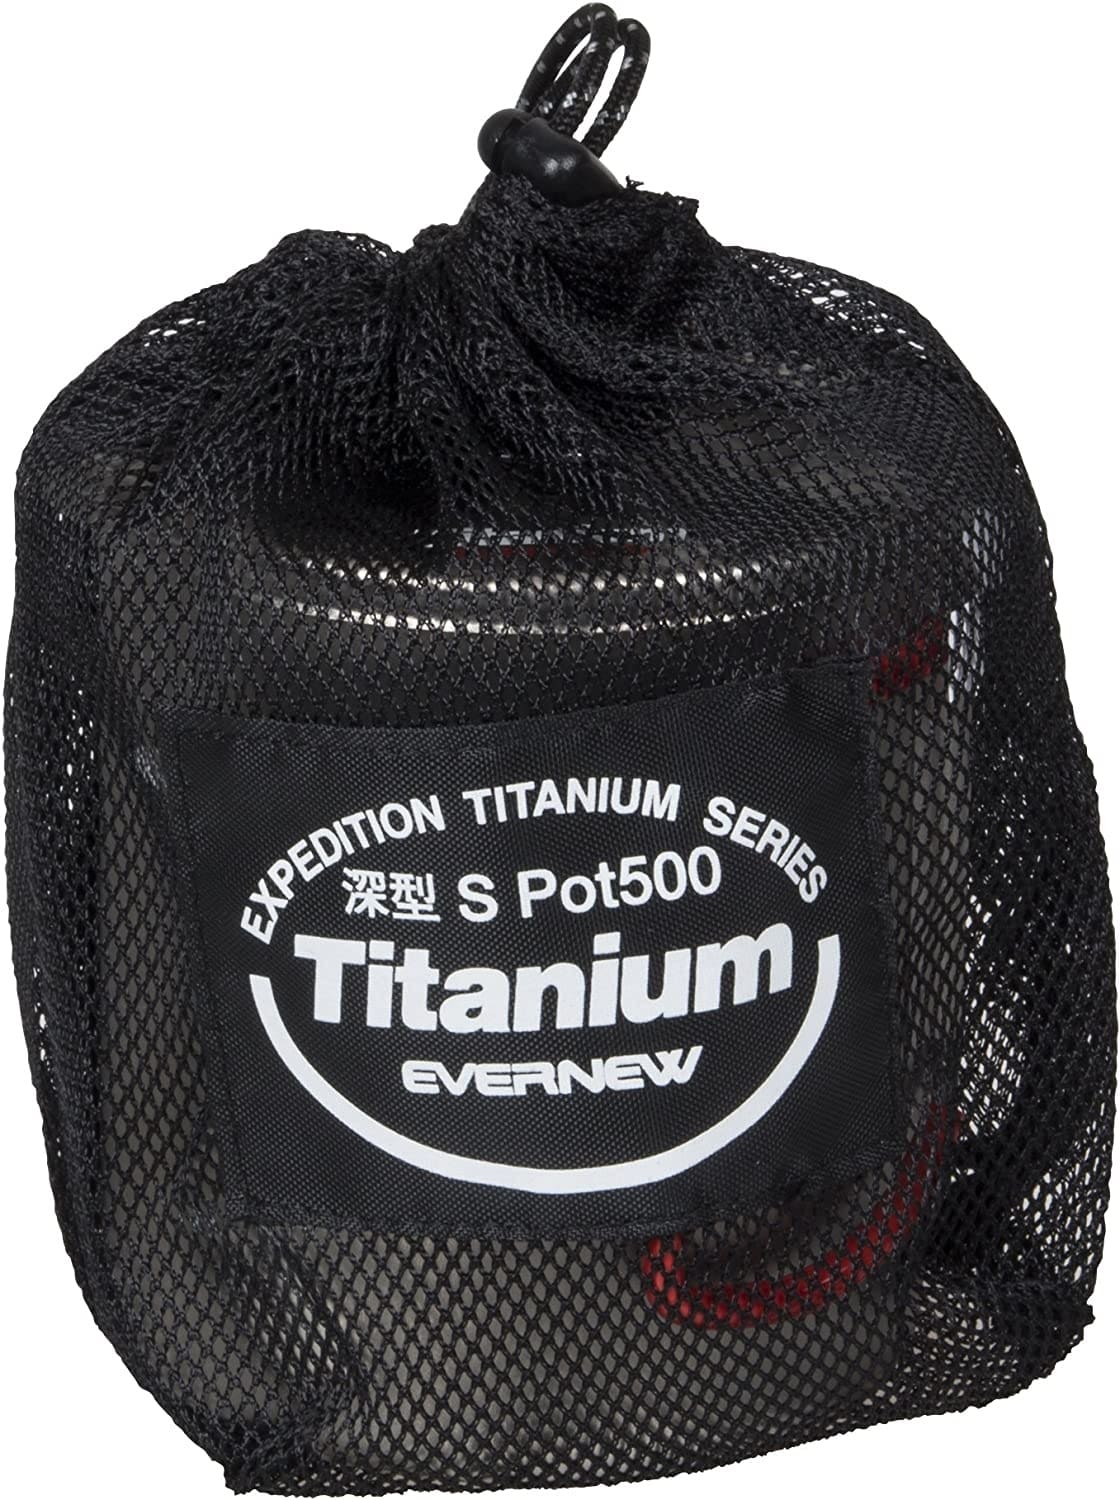 EVERNEW Titanium Pasta Pot in stuff sack